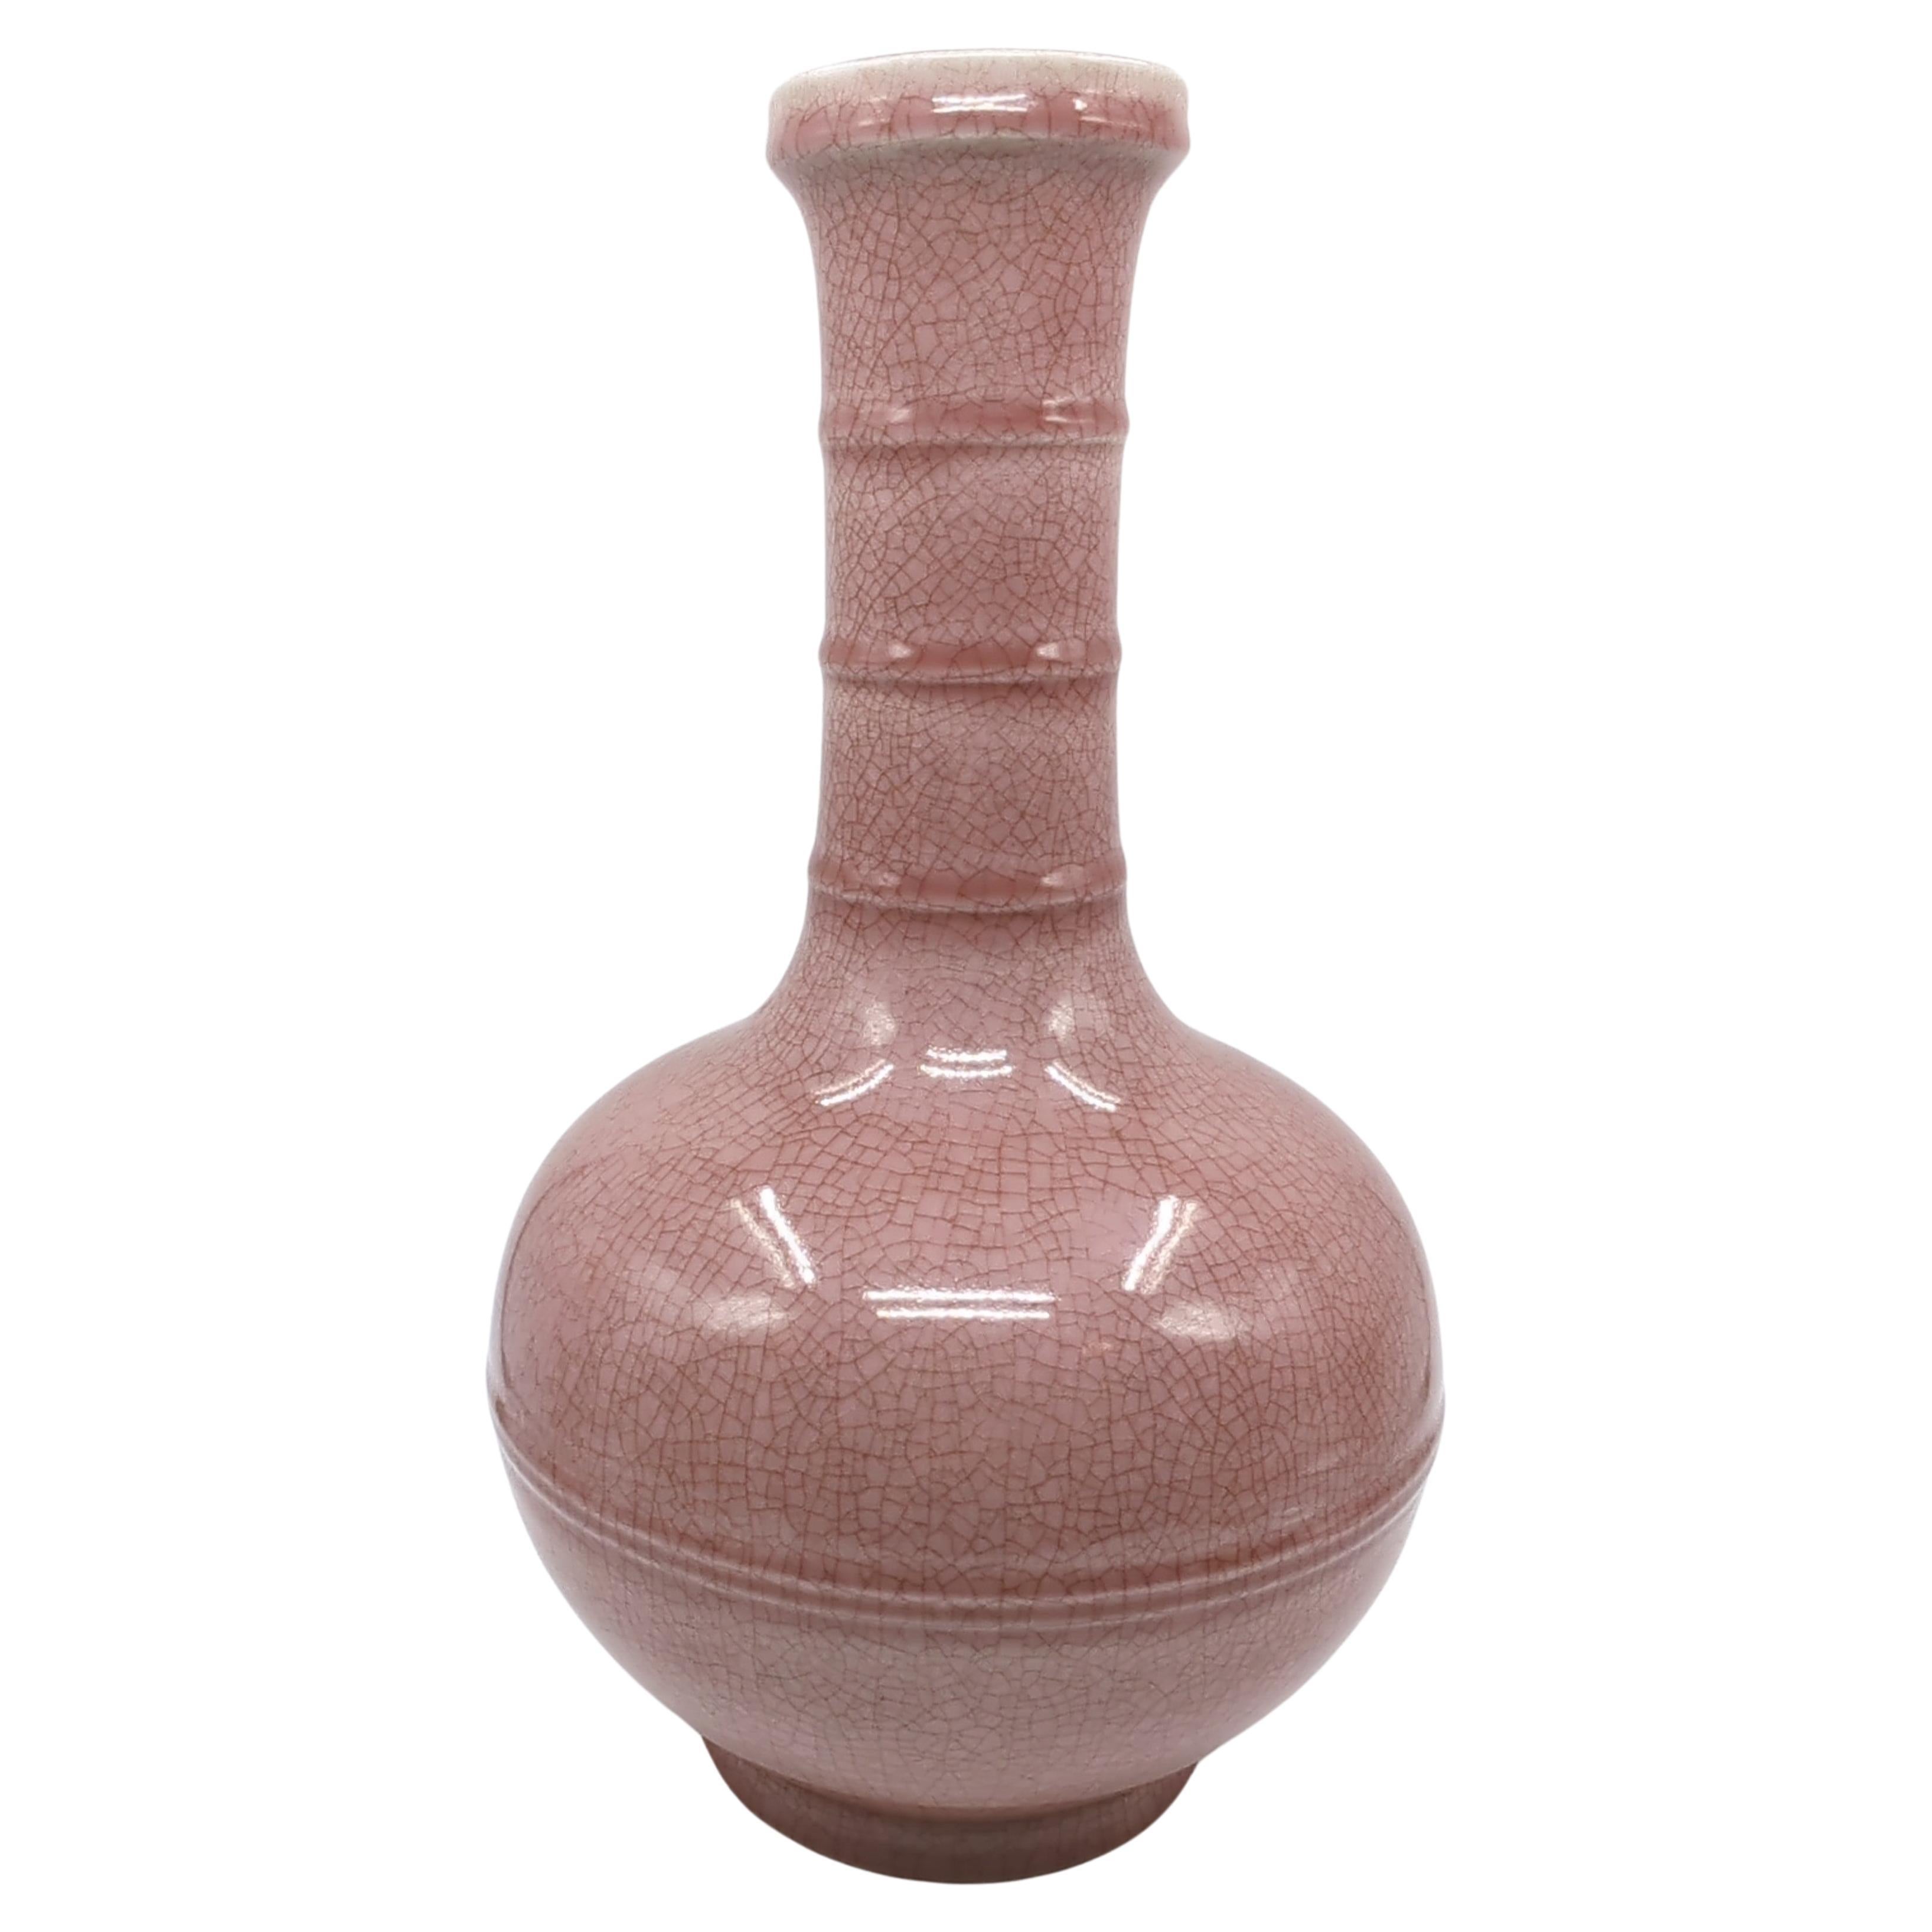 Ce grand vase impressionnant, datant du milieu du 20e siècle, illustre le savoir-faire artistique et artisanal des céramiques chinoises de la période 5/6/7. Le vase est réalisé dans une forme globulaire Tianqiu, une forme qui a été célébrée dans